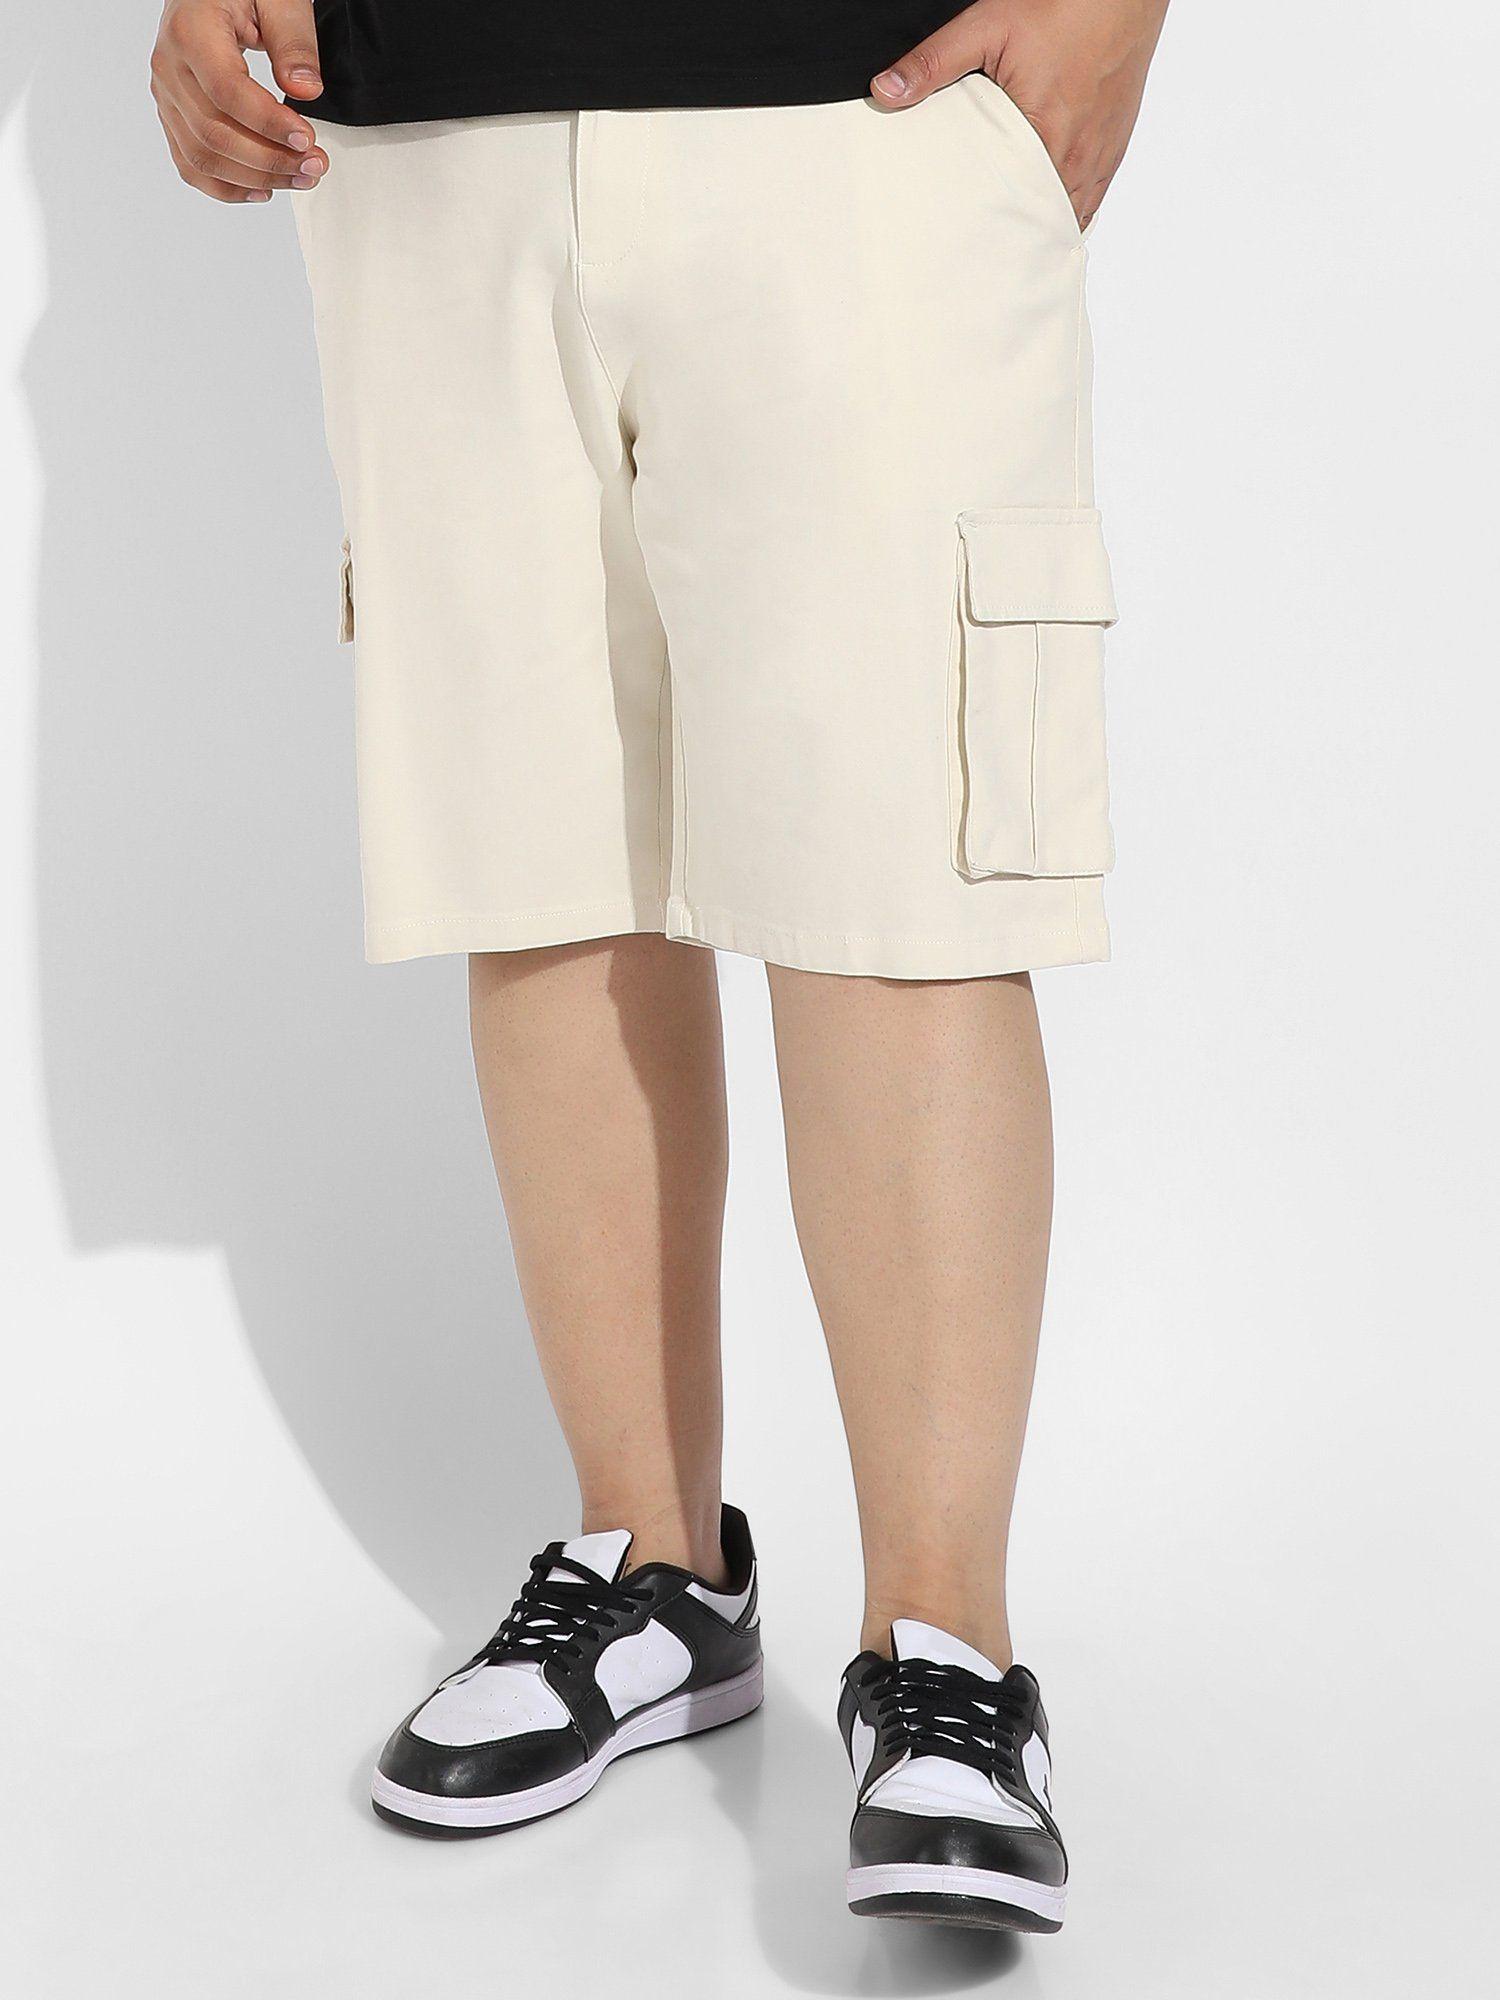 mens pale cream cargo shorts